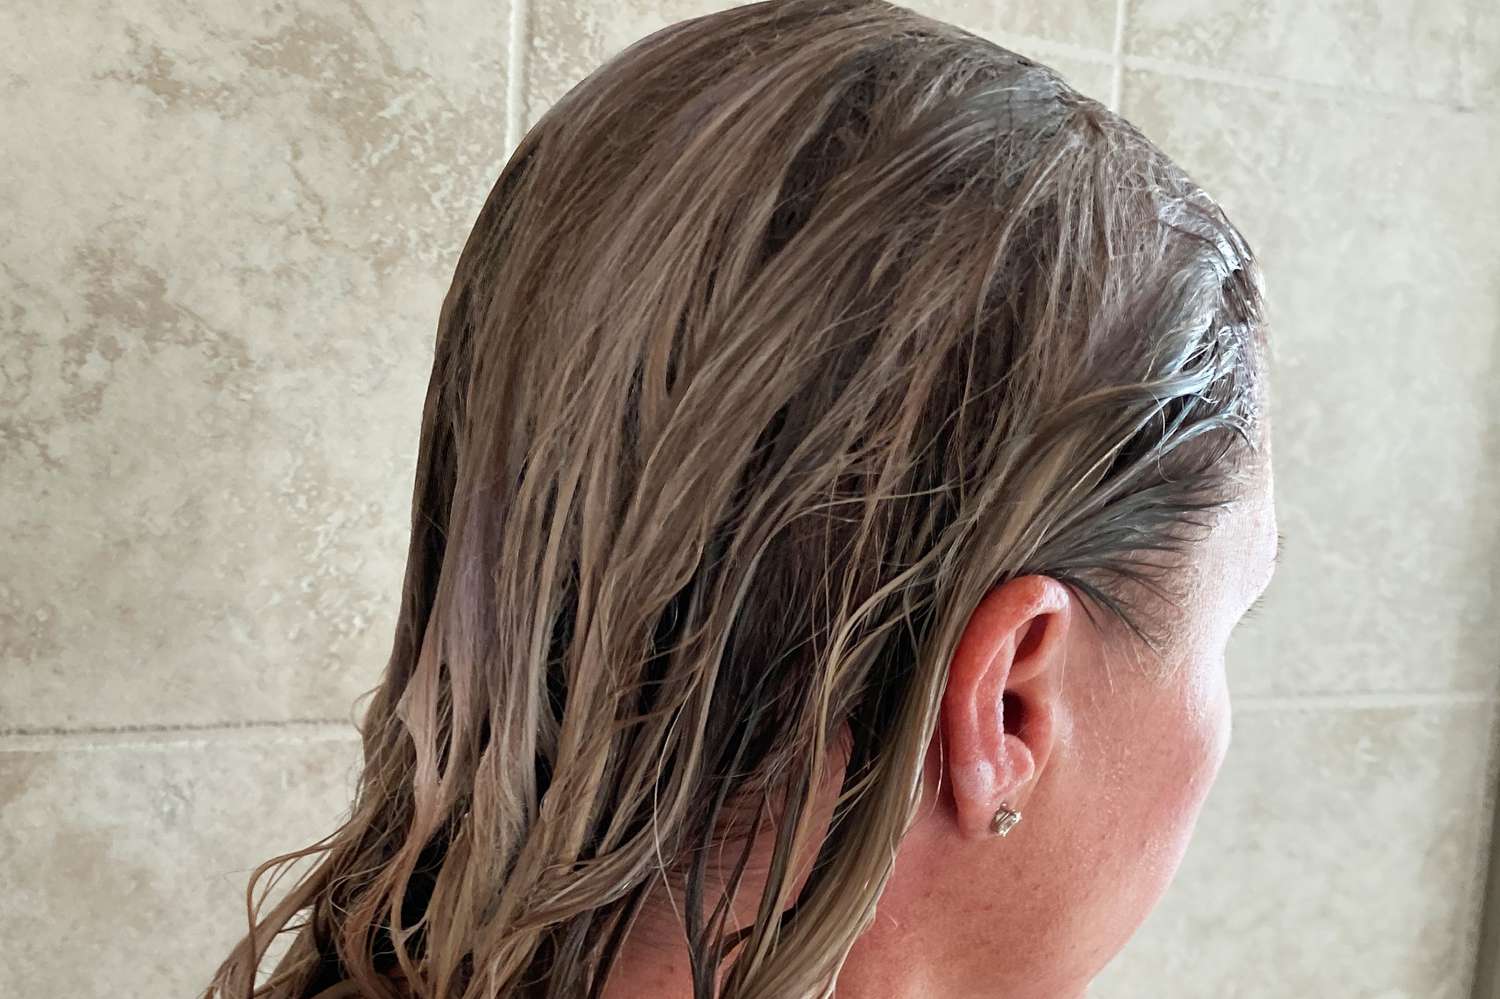 A person applies Saltair Beach Blonde Shampoo